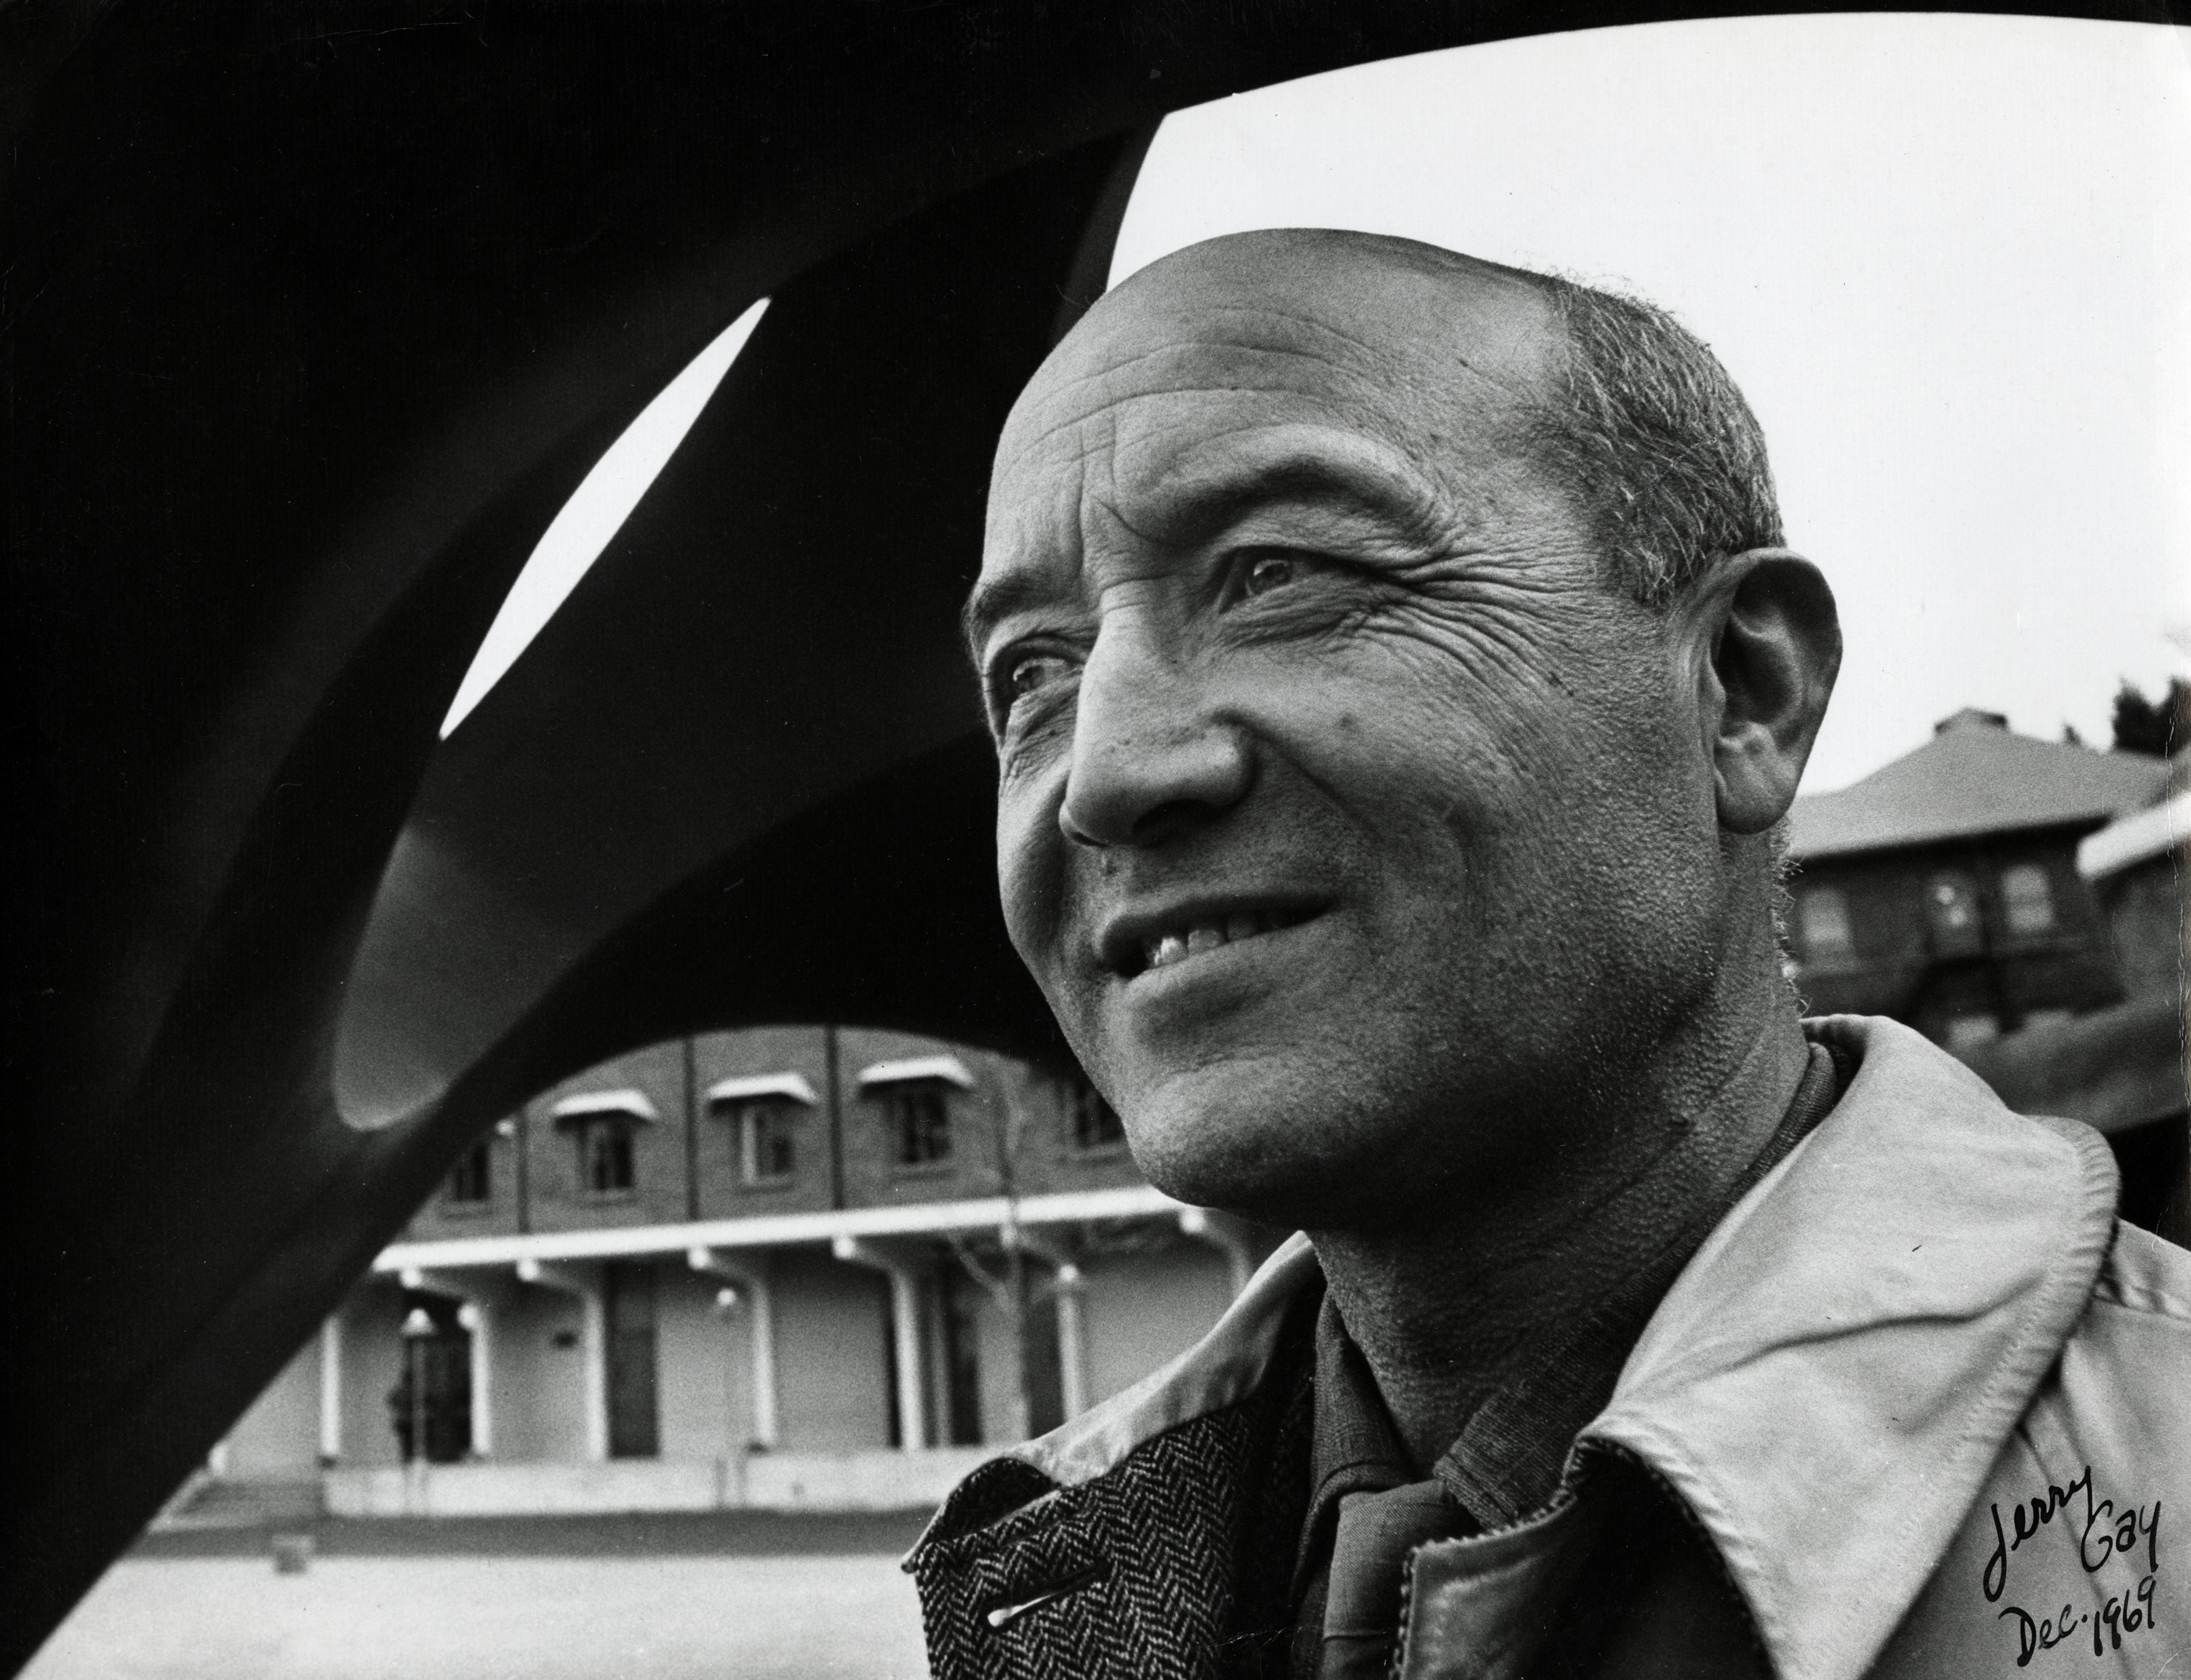  Isamu Noguchi smiles in front of Skyviewing Sculpture in 1969.